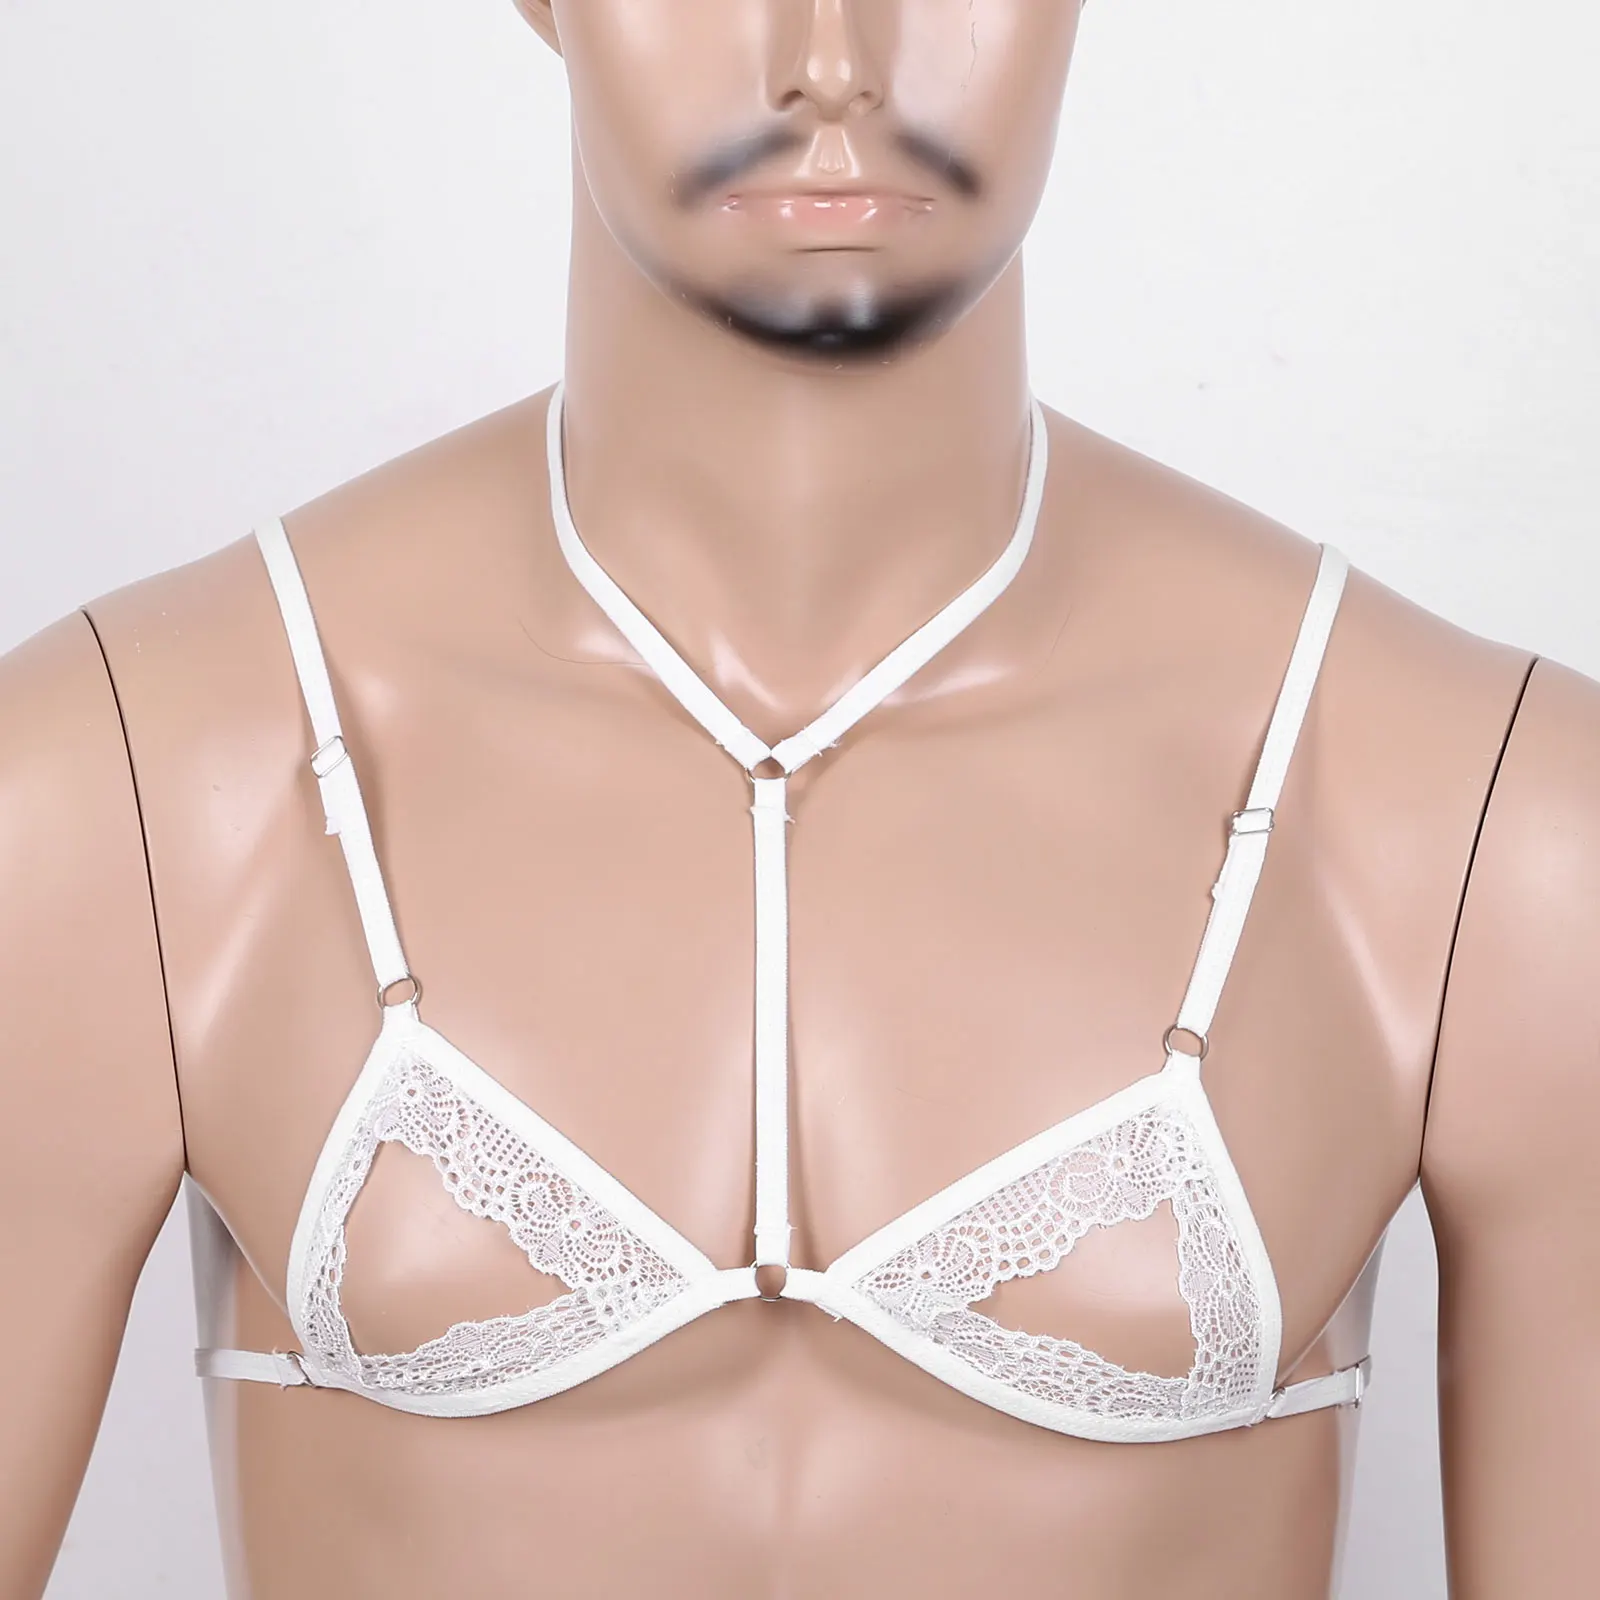 Sexy Men's Lingerie Cross Dresser Sheer Lace Training Bra Unlined Bralette  Top